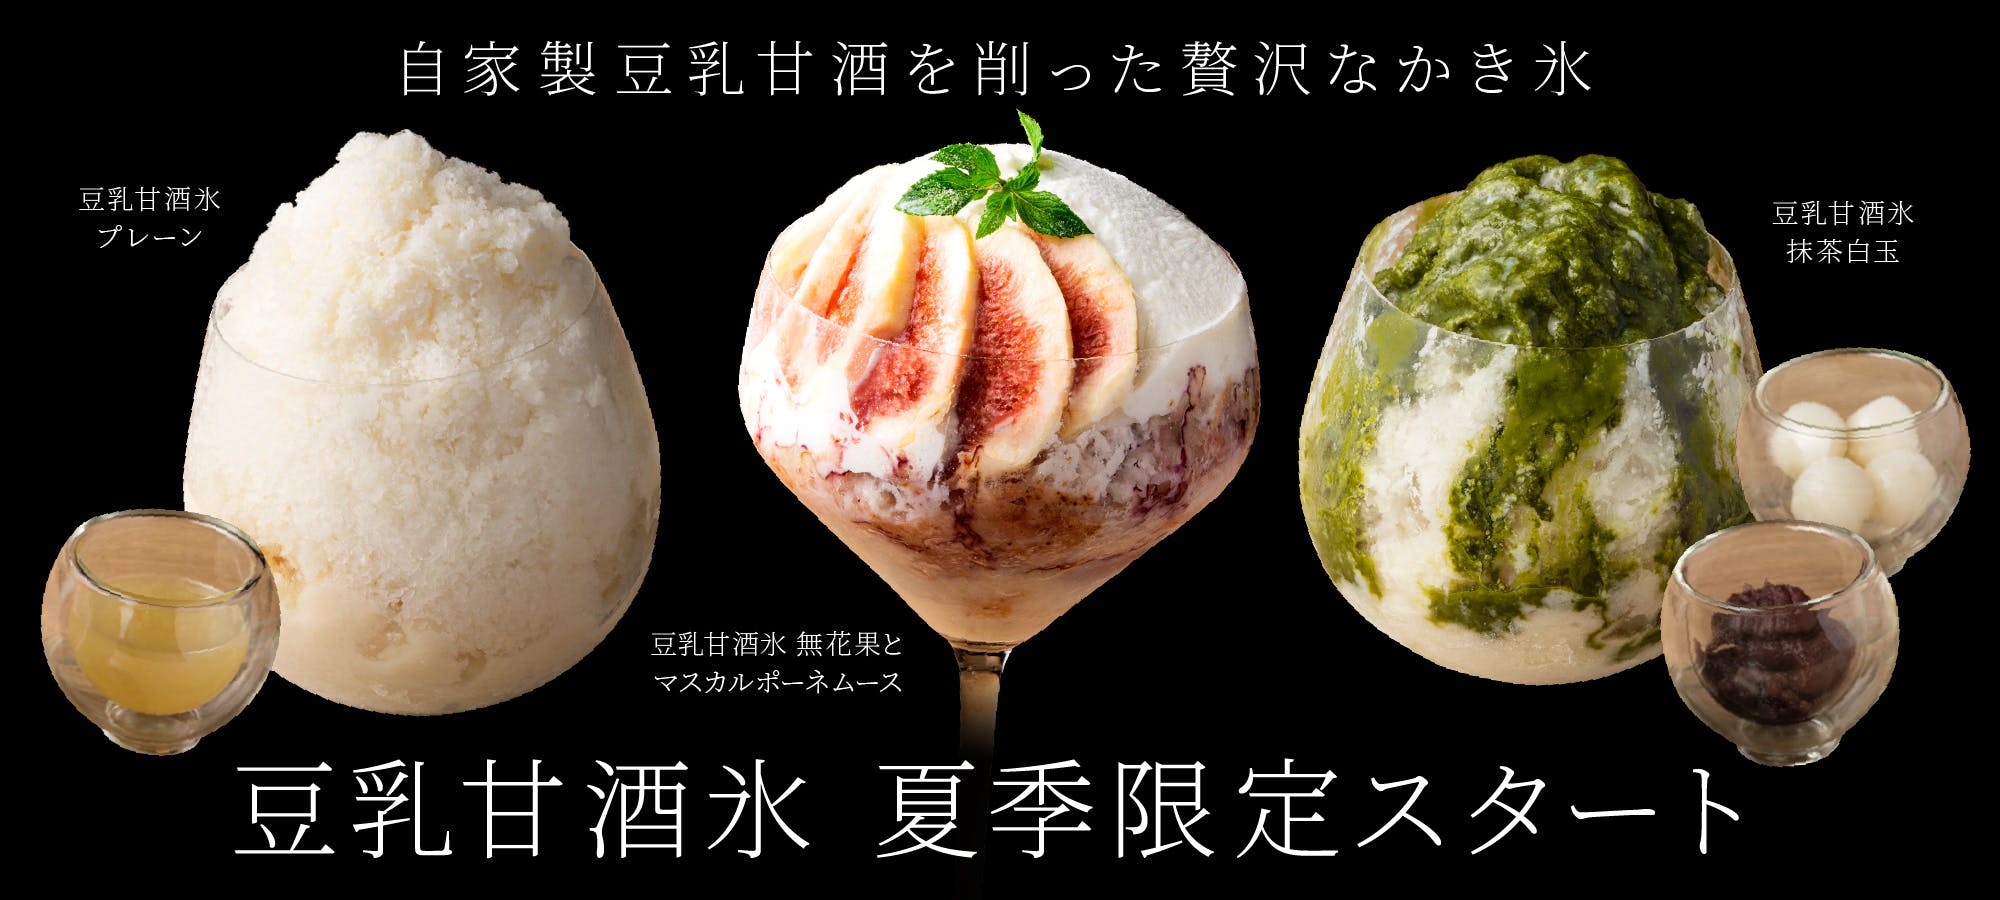 日本酒プレミアムラウンジ一献風月 by PERIE CHIBA 夏季限定「豆乳甘酒氷」を提供開始